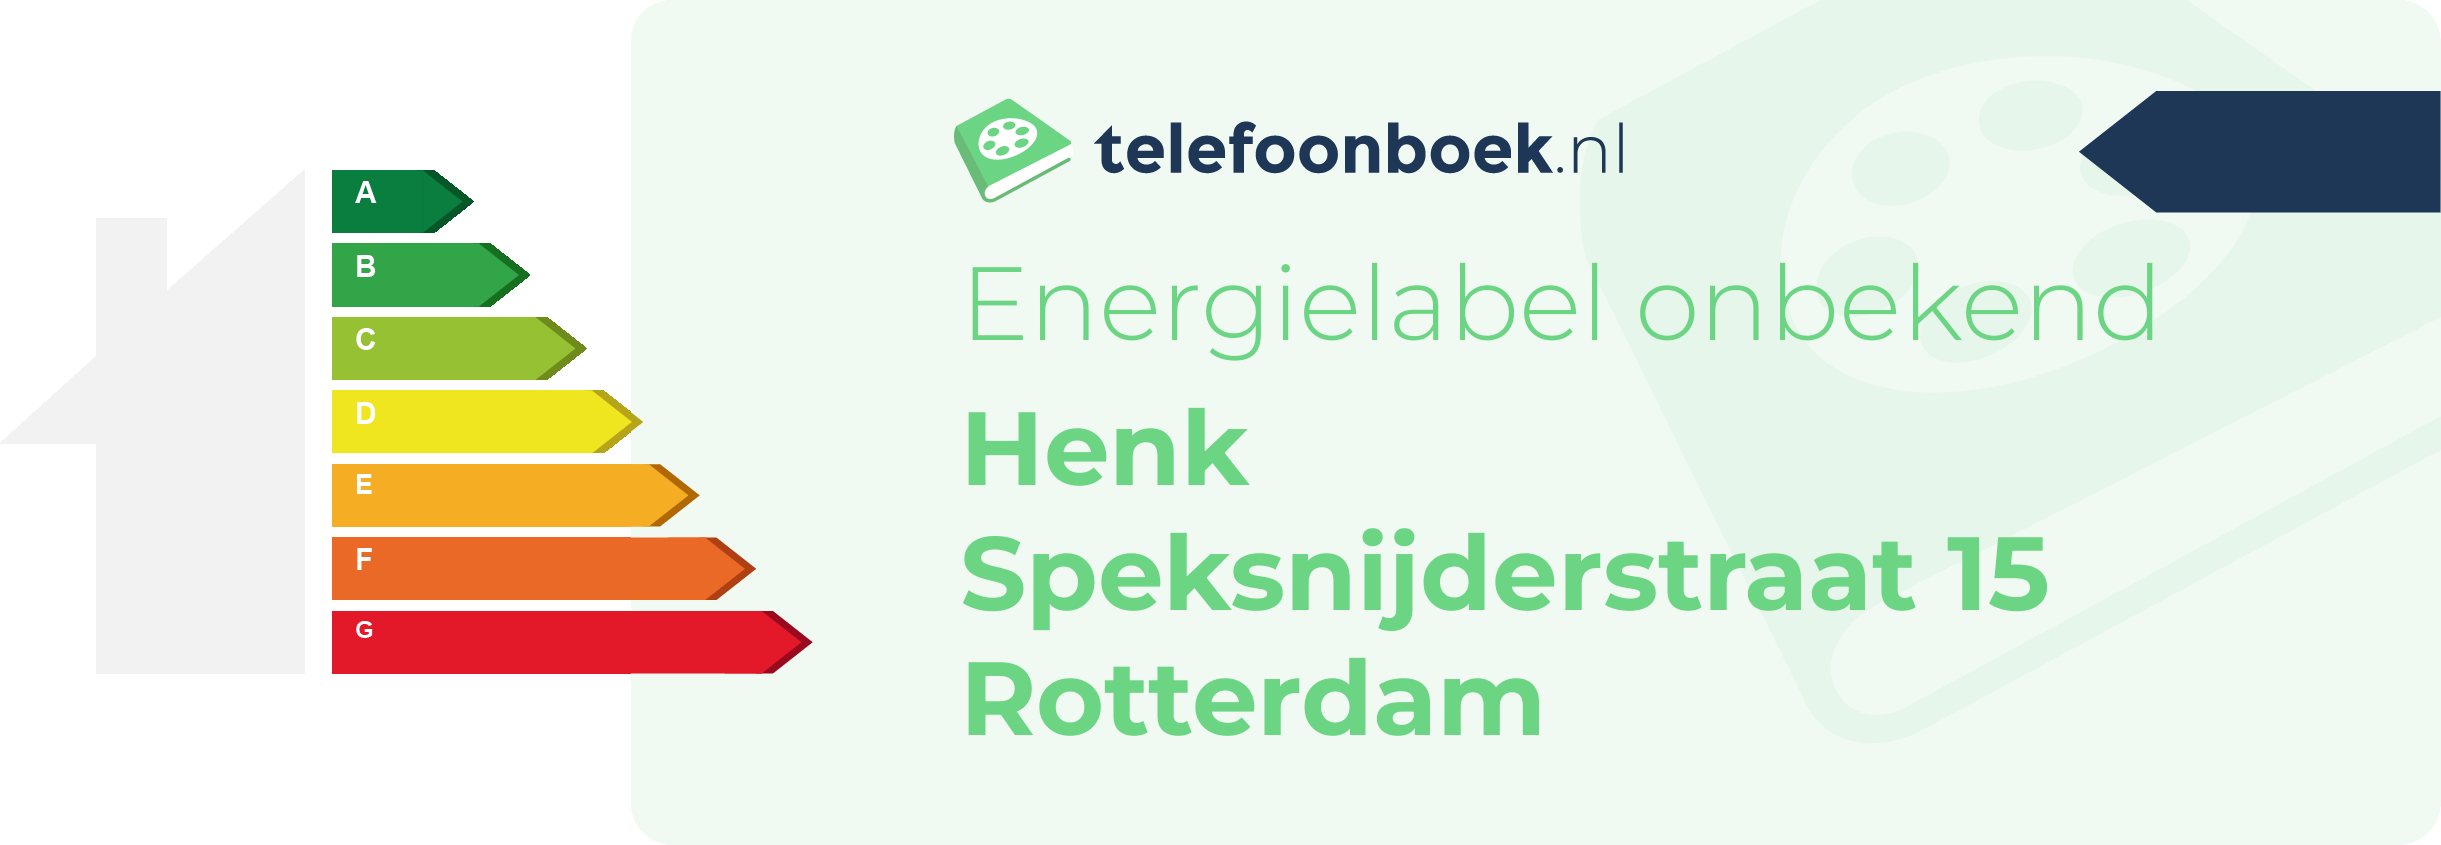 Energielabel Henk Speksnijderstraat 15 Rotterdam